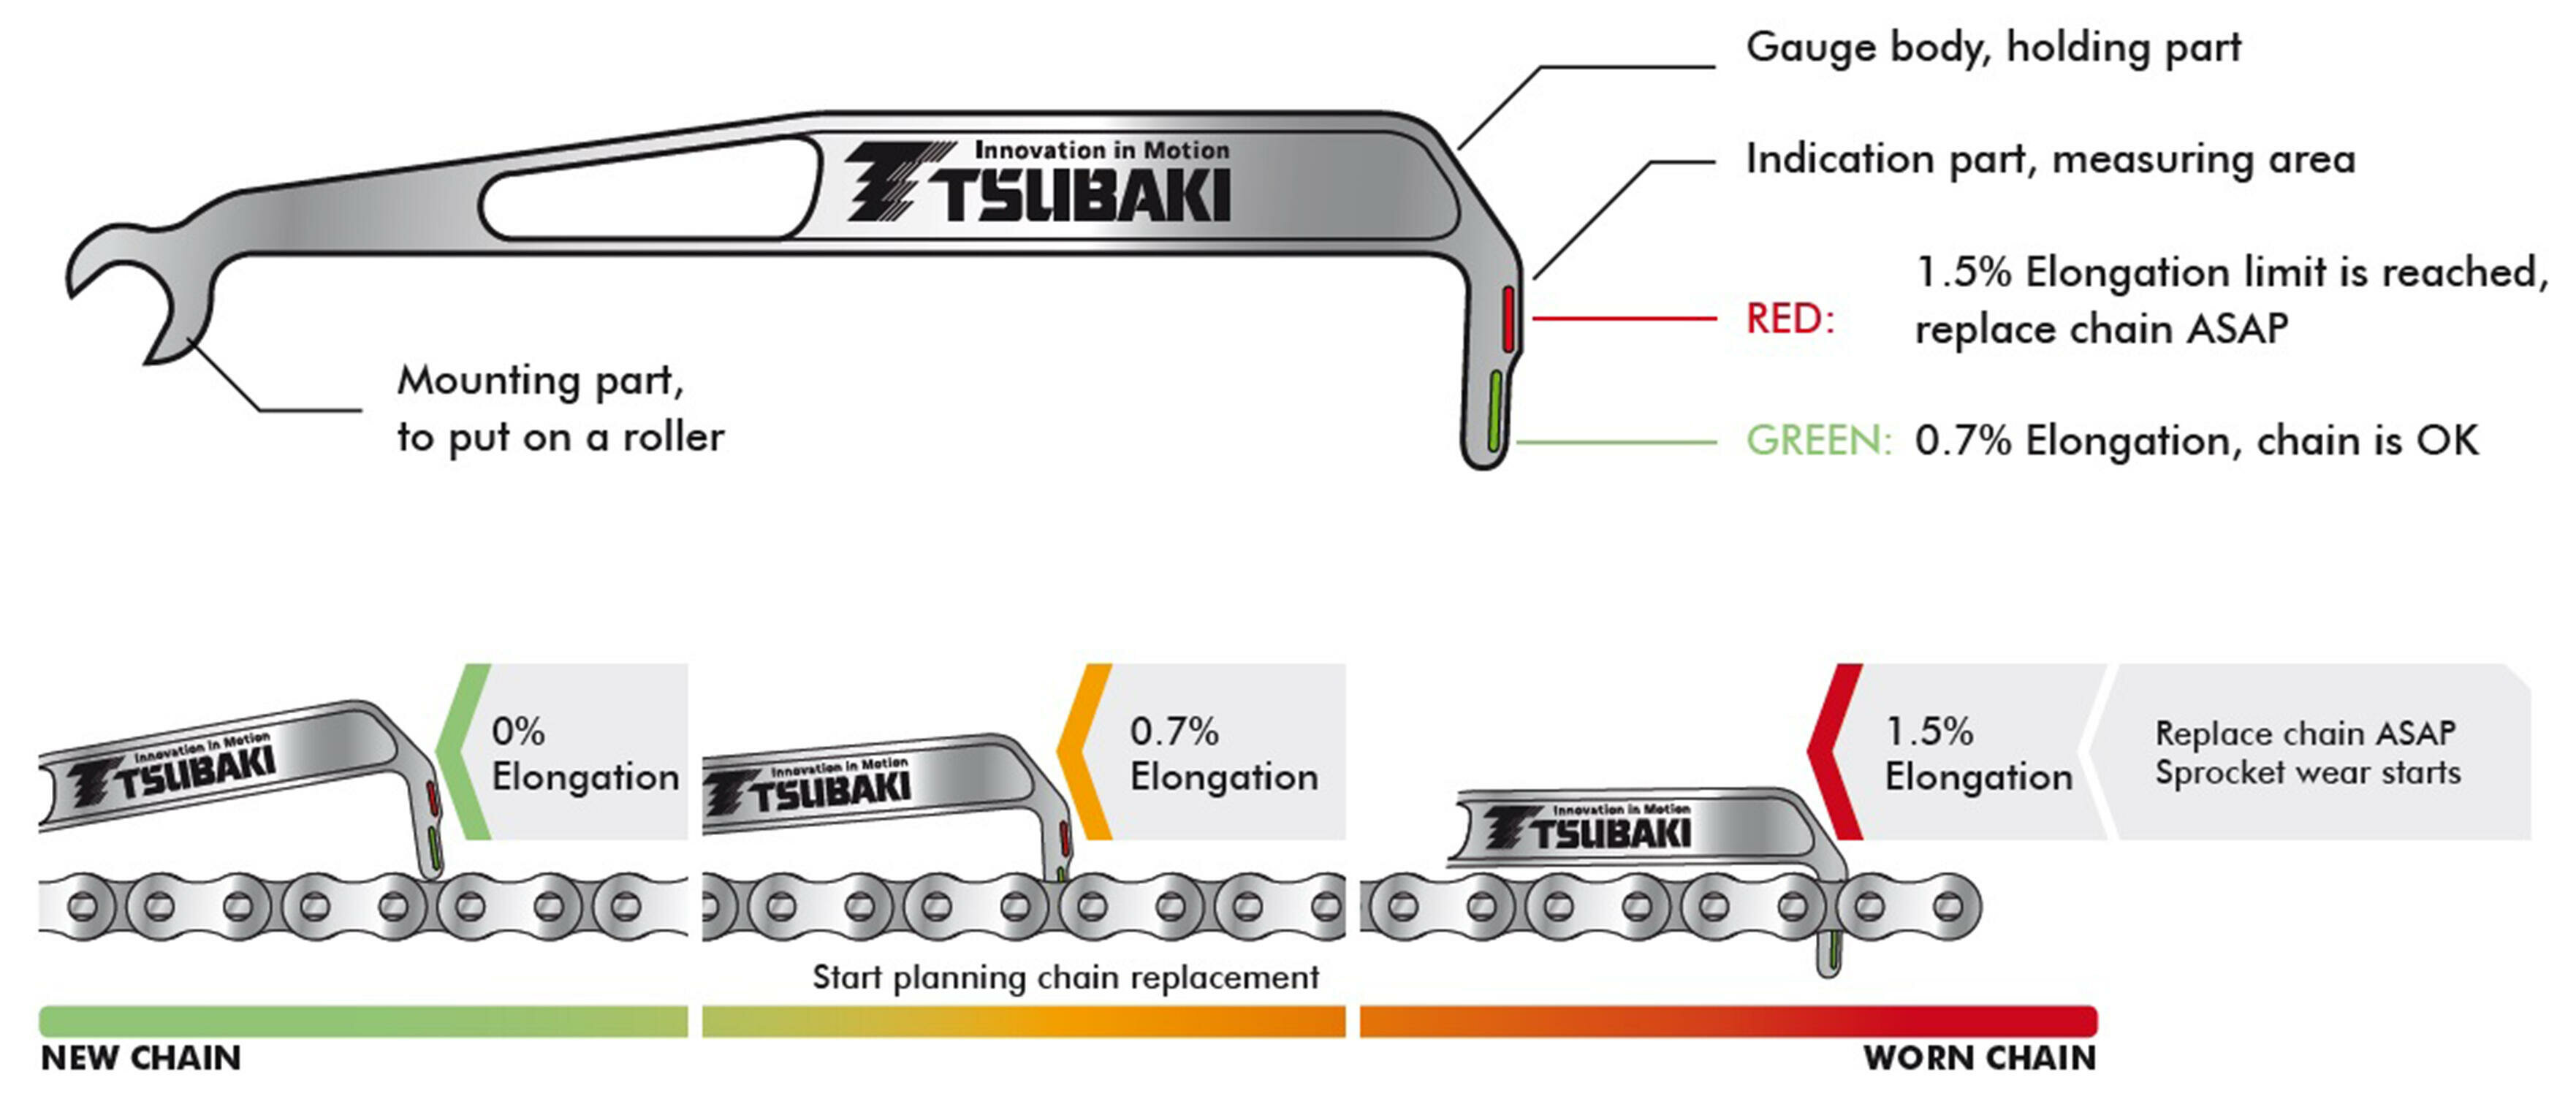 tsubaki chain wear indicator